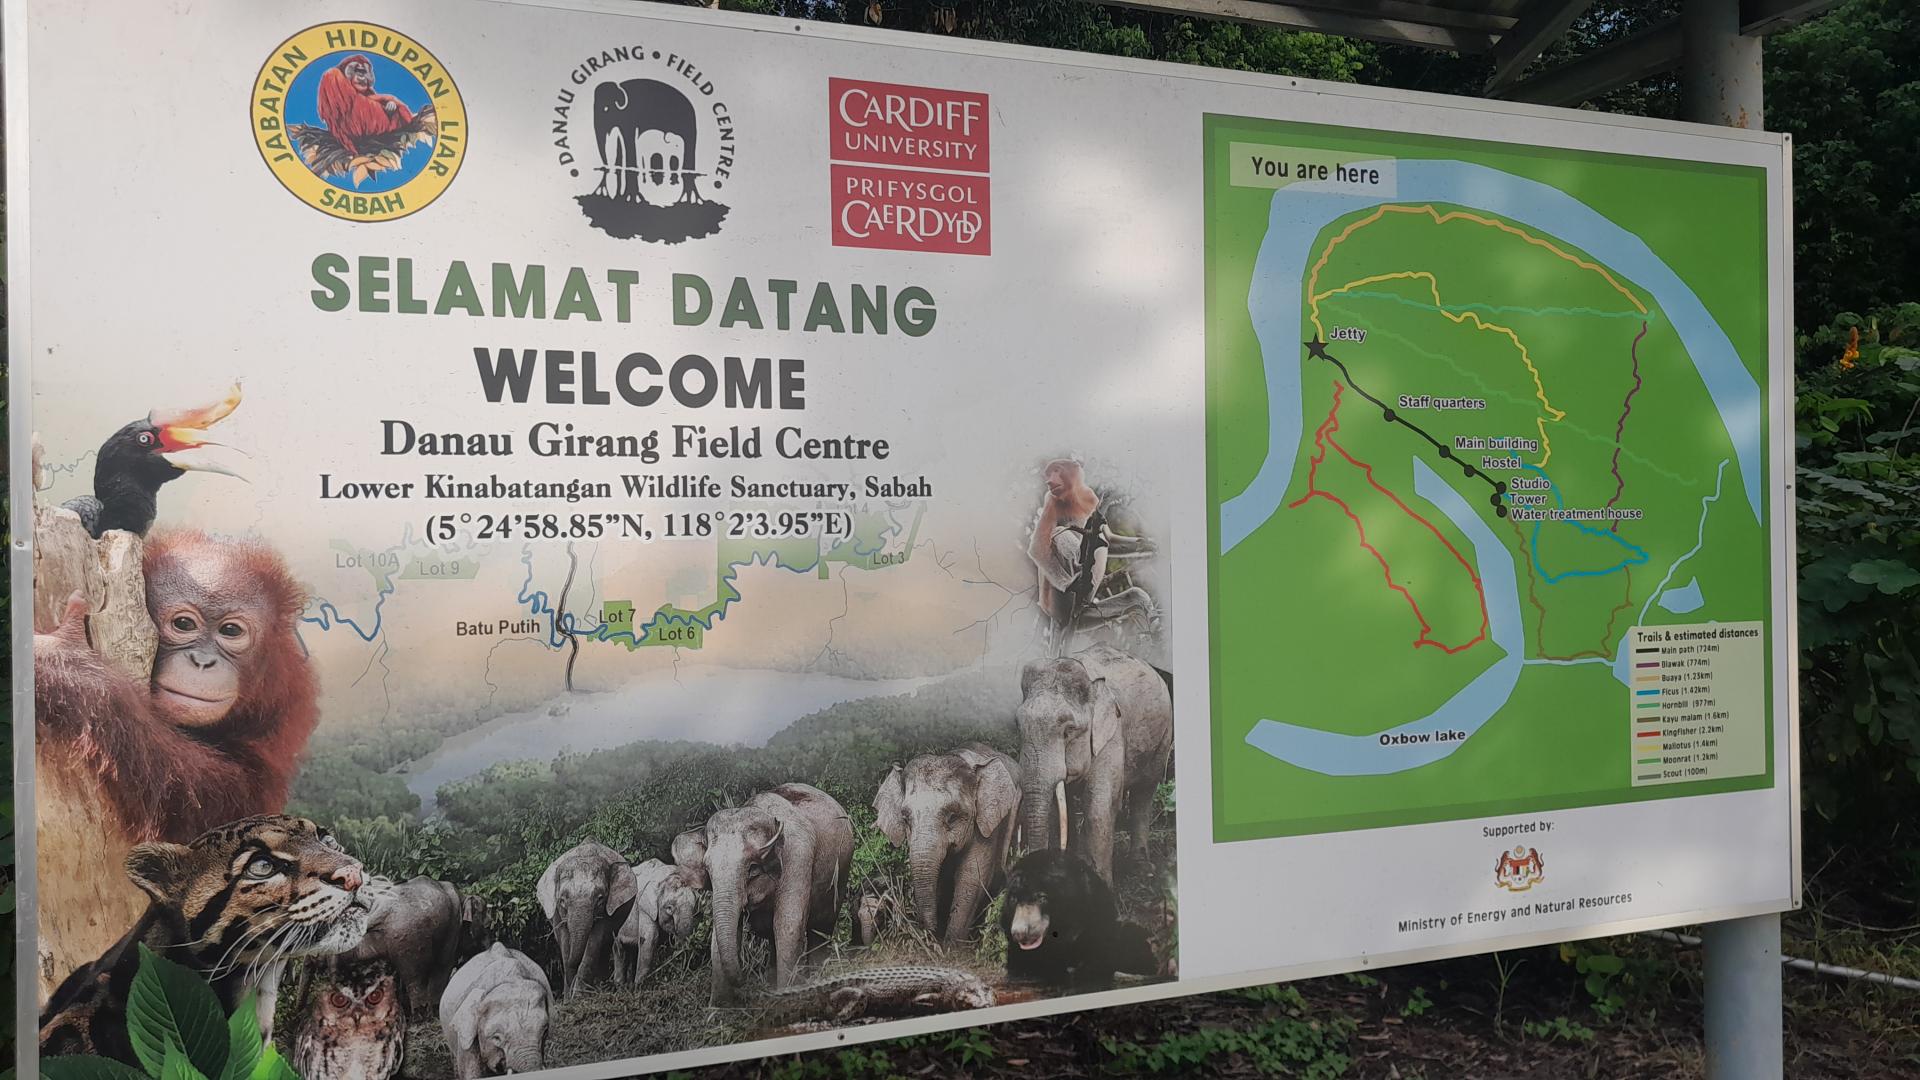 Wizyta w Danau Girang Field Centre w Malezji - zobacz więcej